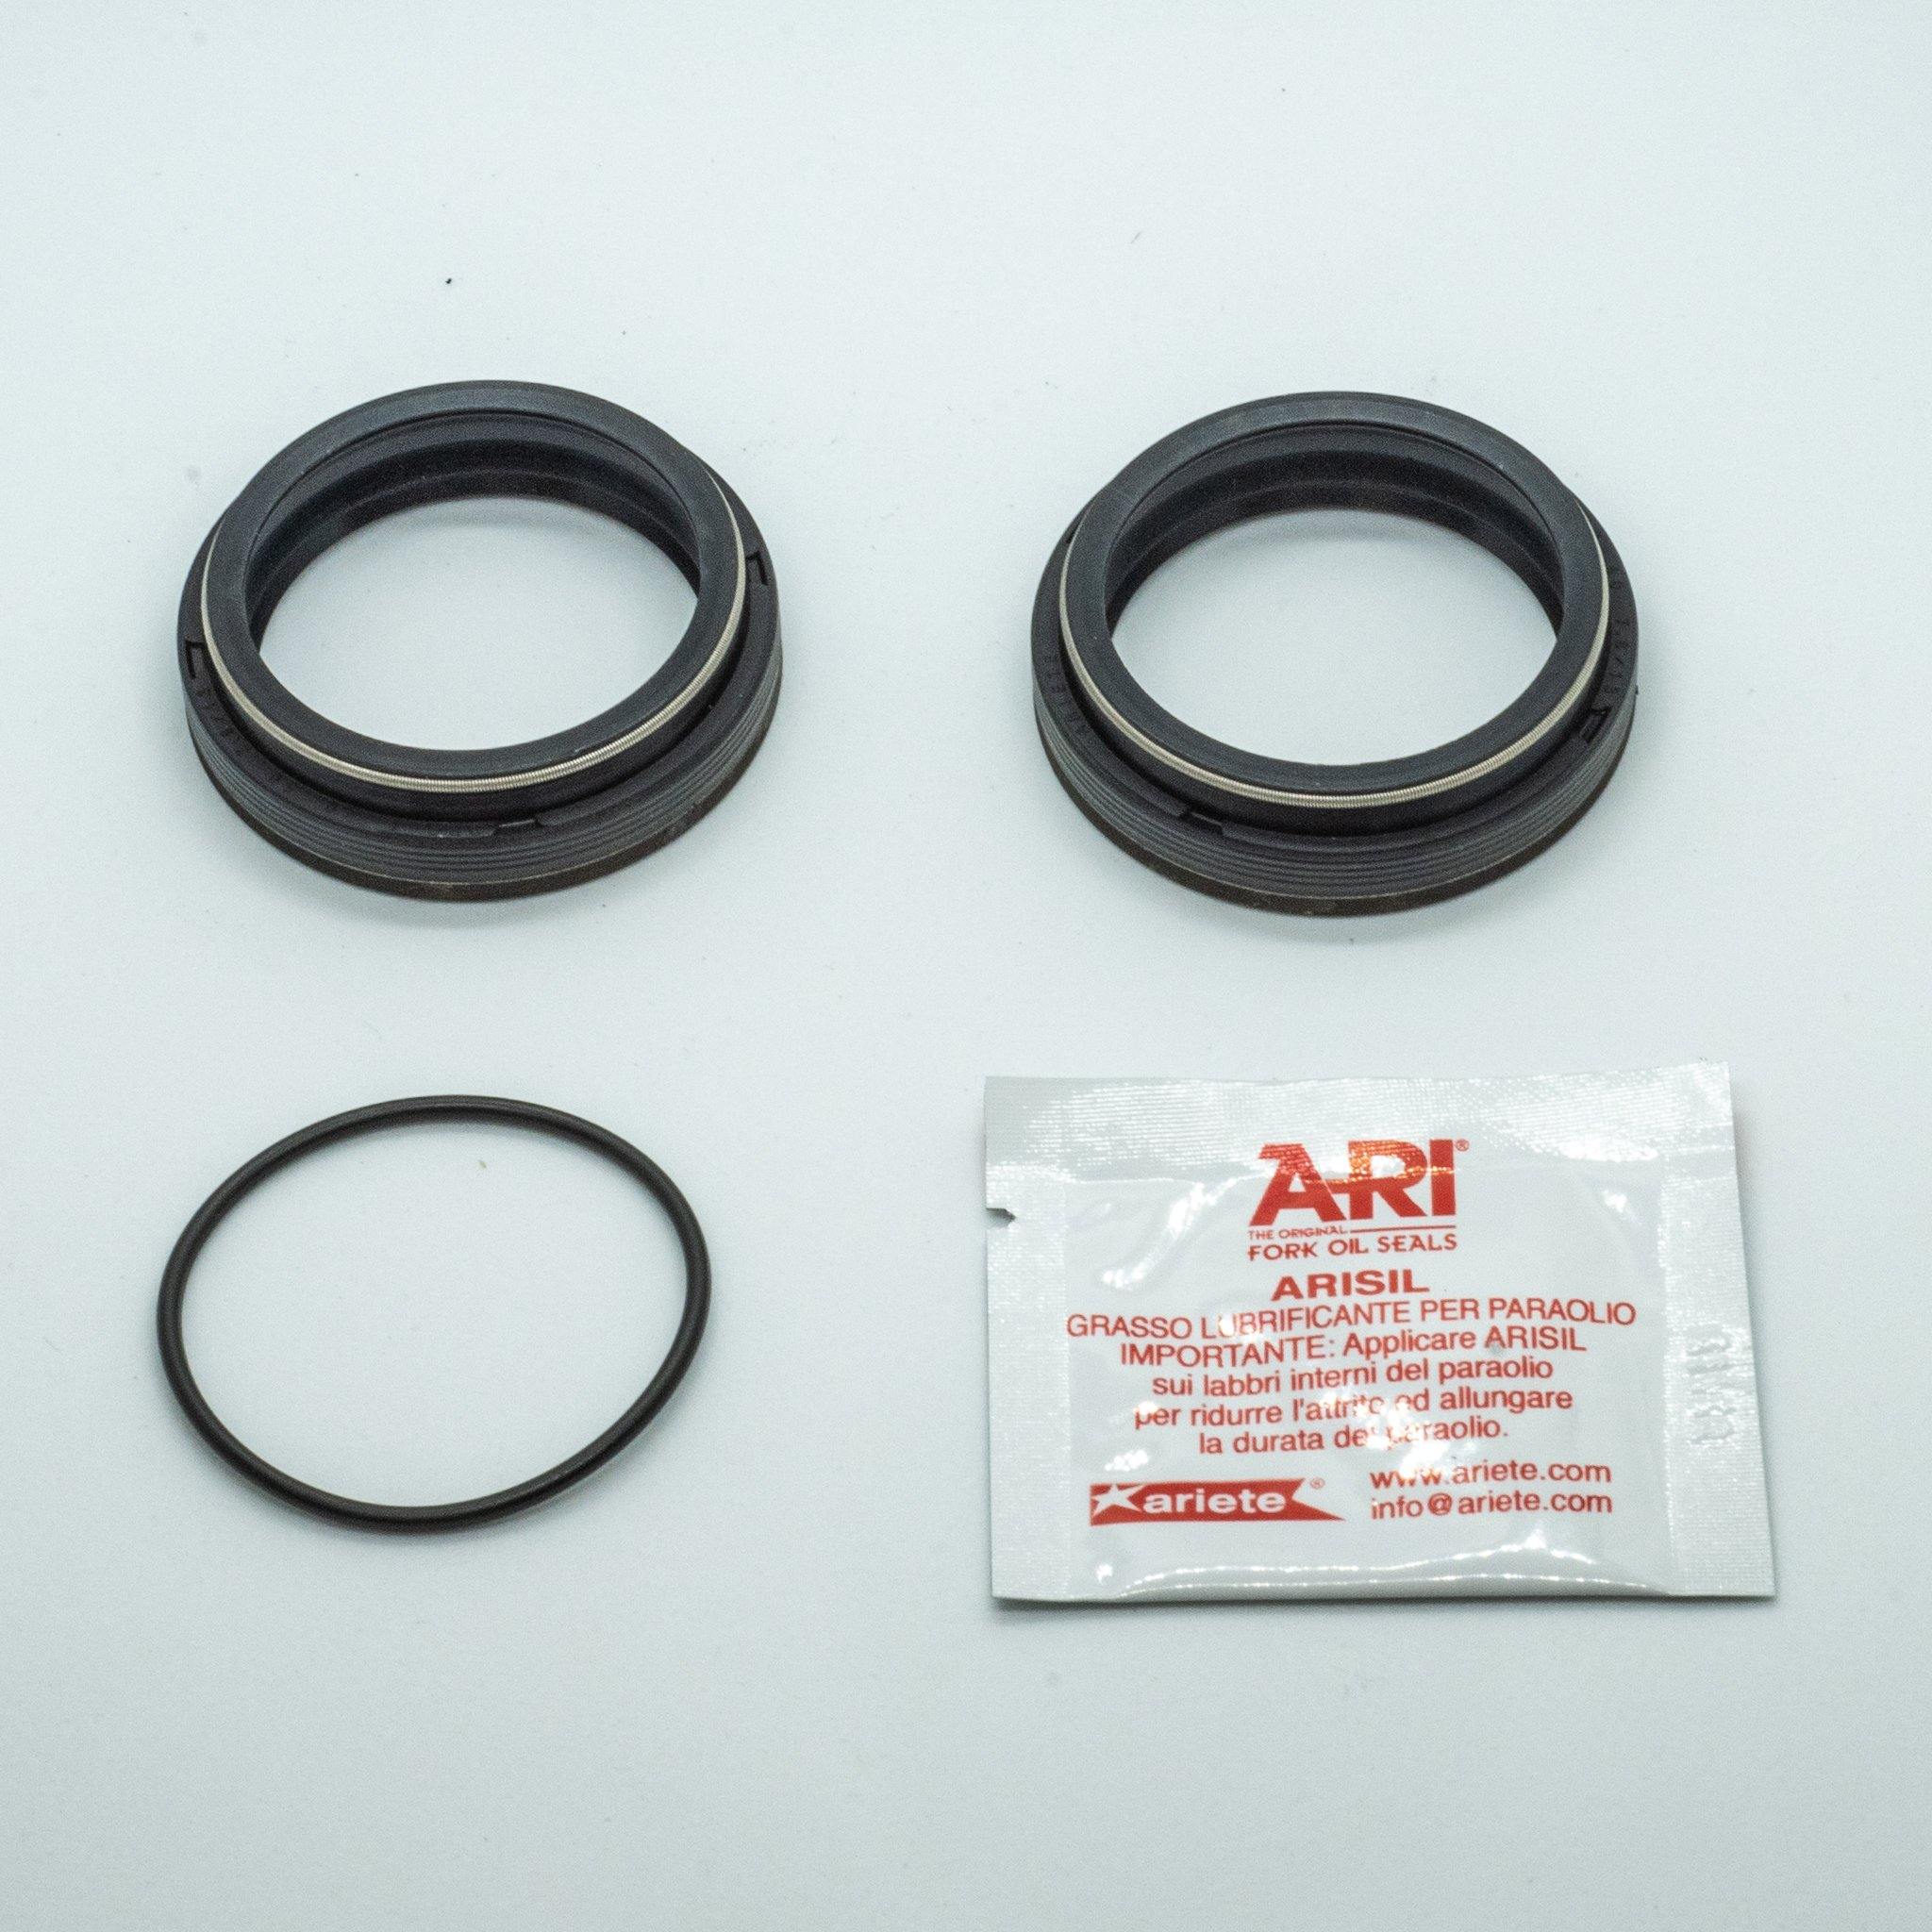 ARI Fork Oil Seals - 32 Diameter - GAMUX